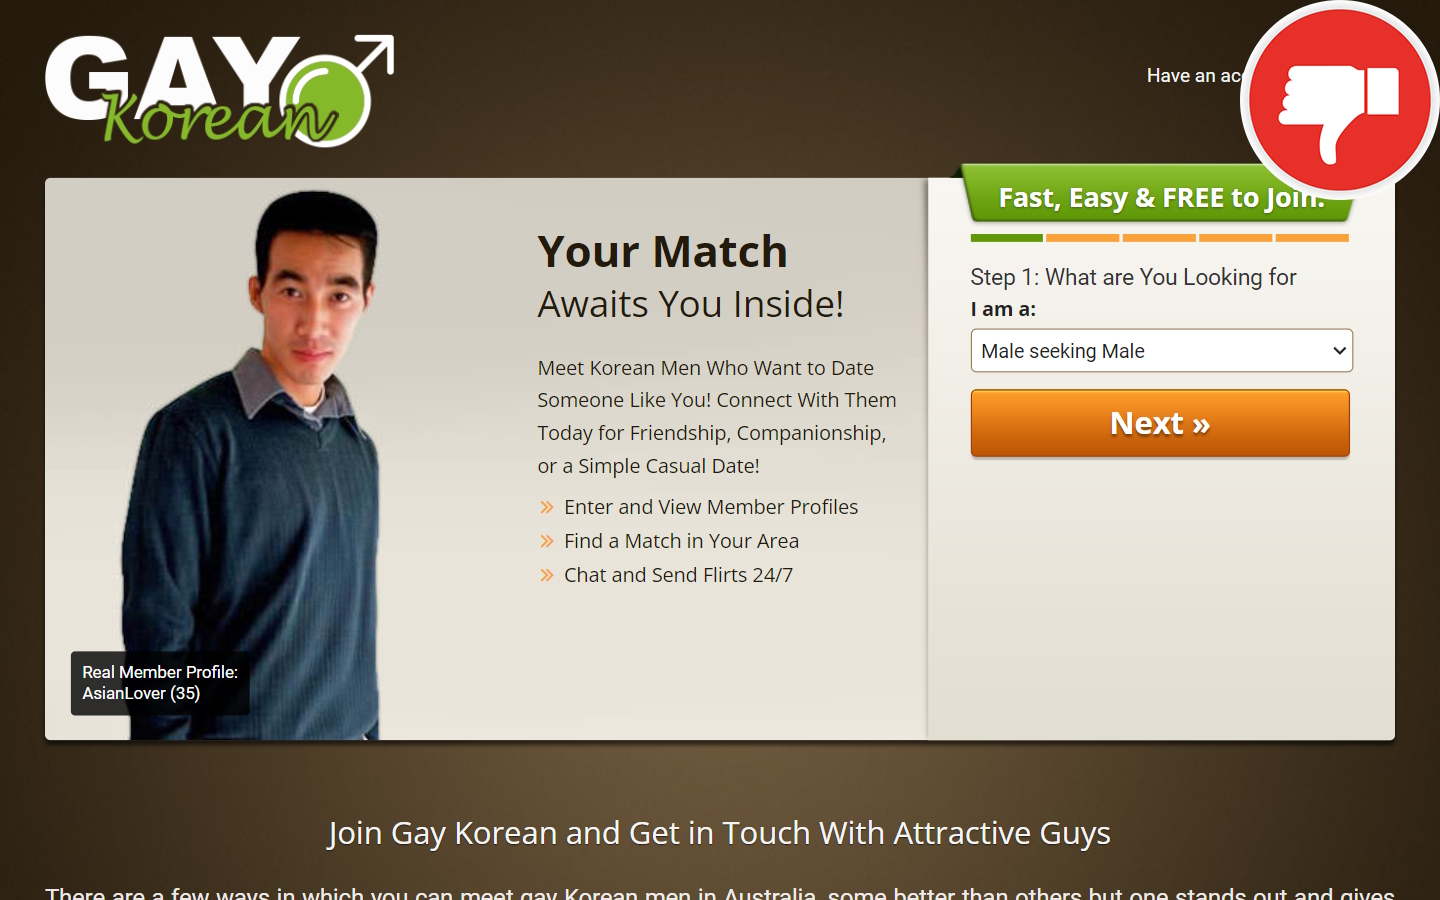 Review GayKorean.com.au Scam